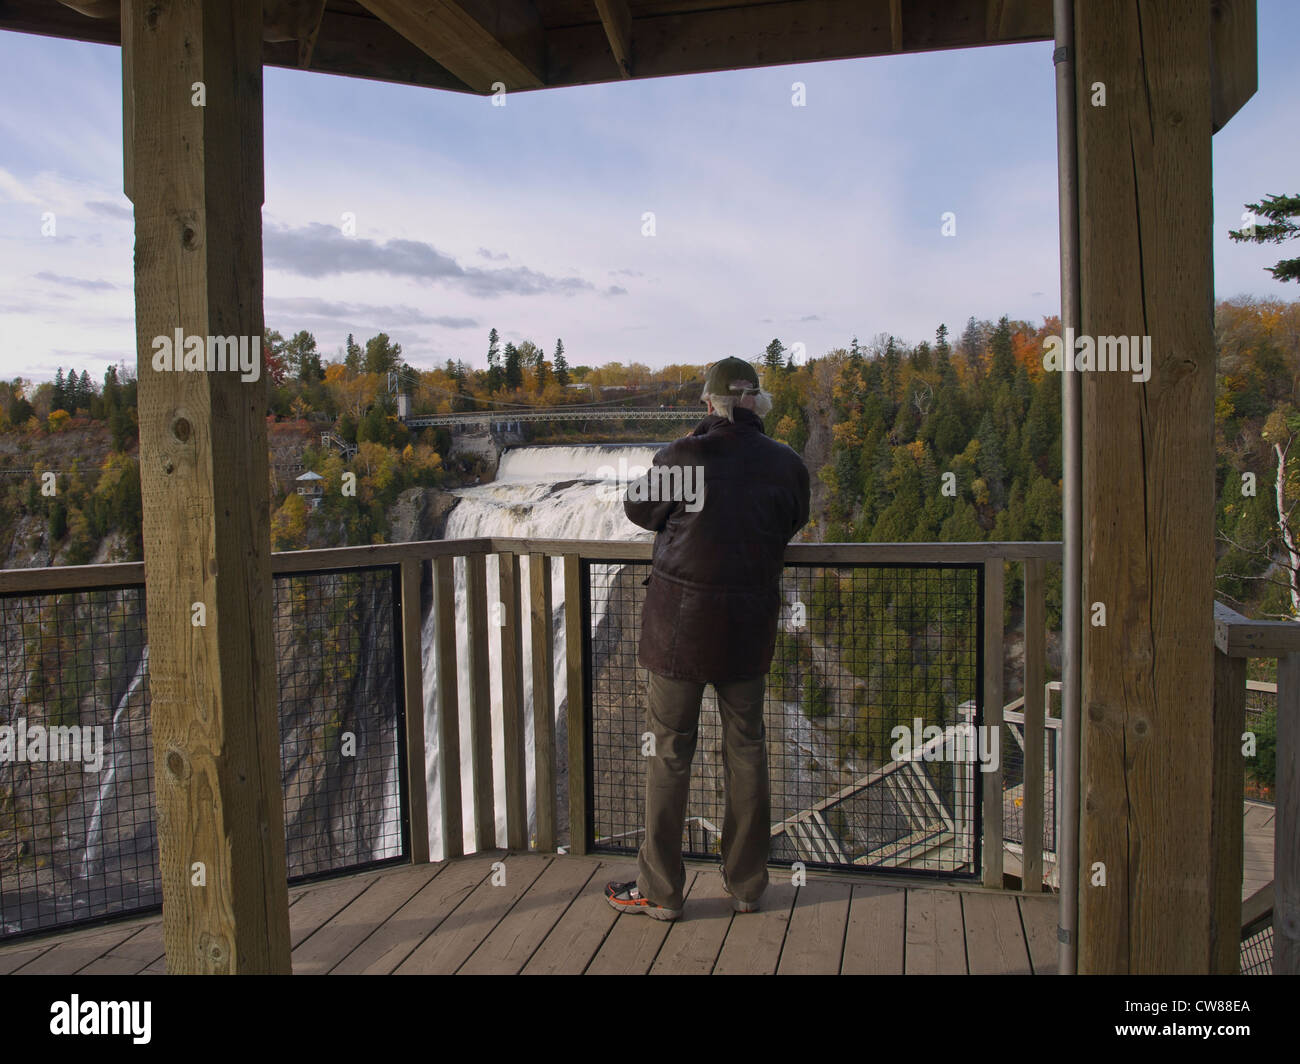 Montmorency Falls, en las afueras de la ciudad de Quebec tiene muchos puntos de vista para ver las cataratas desde todos los ángulos. Foto de stock